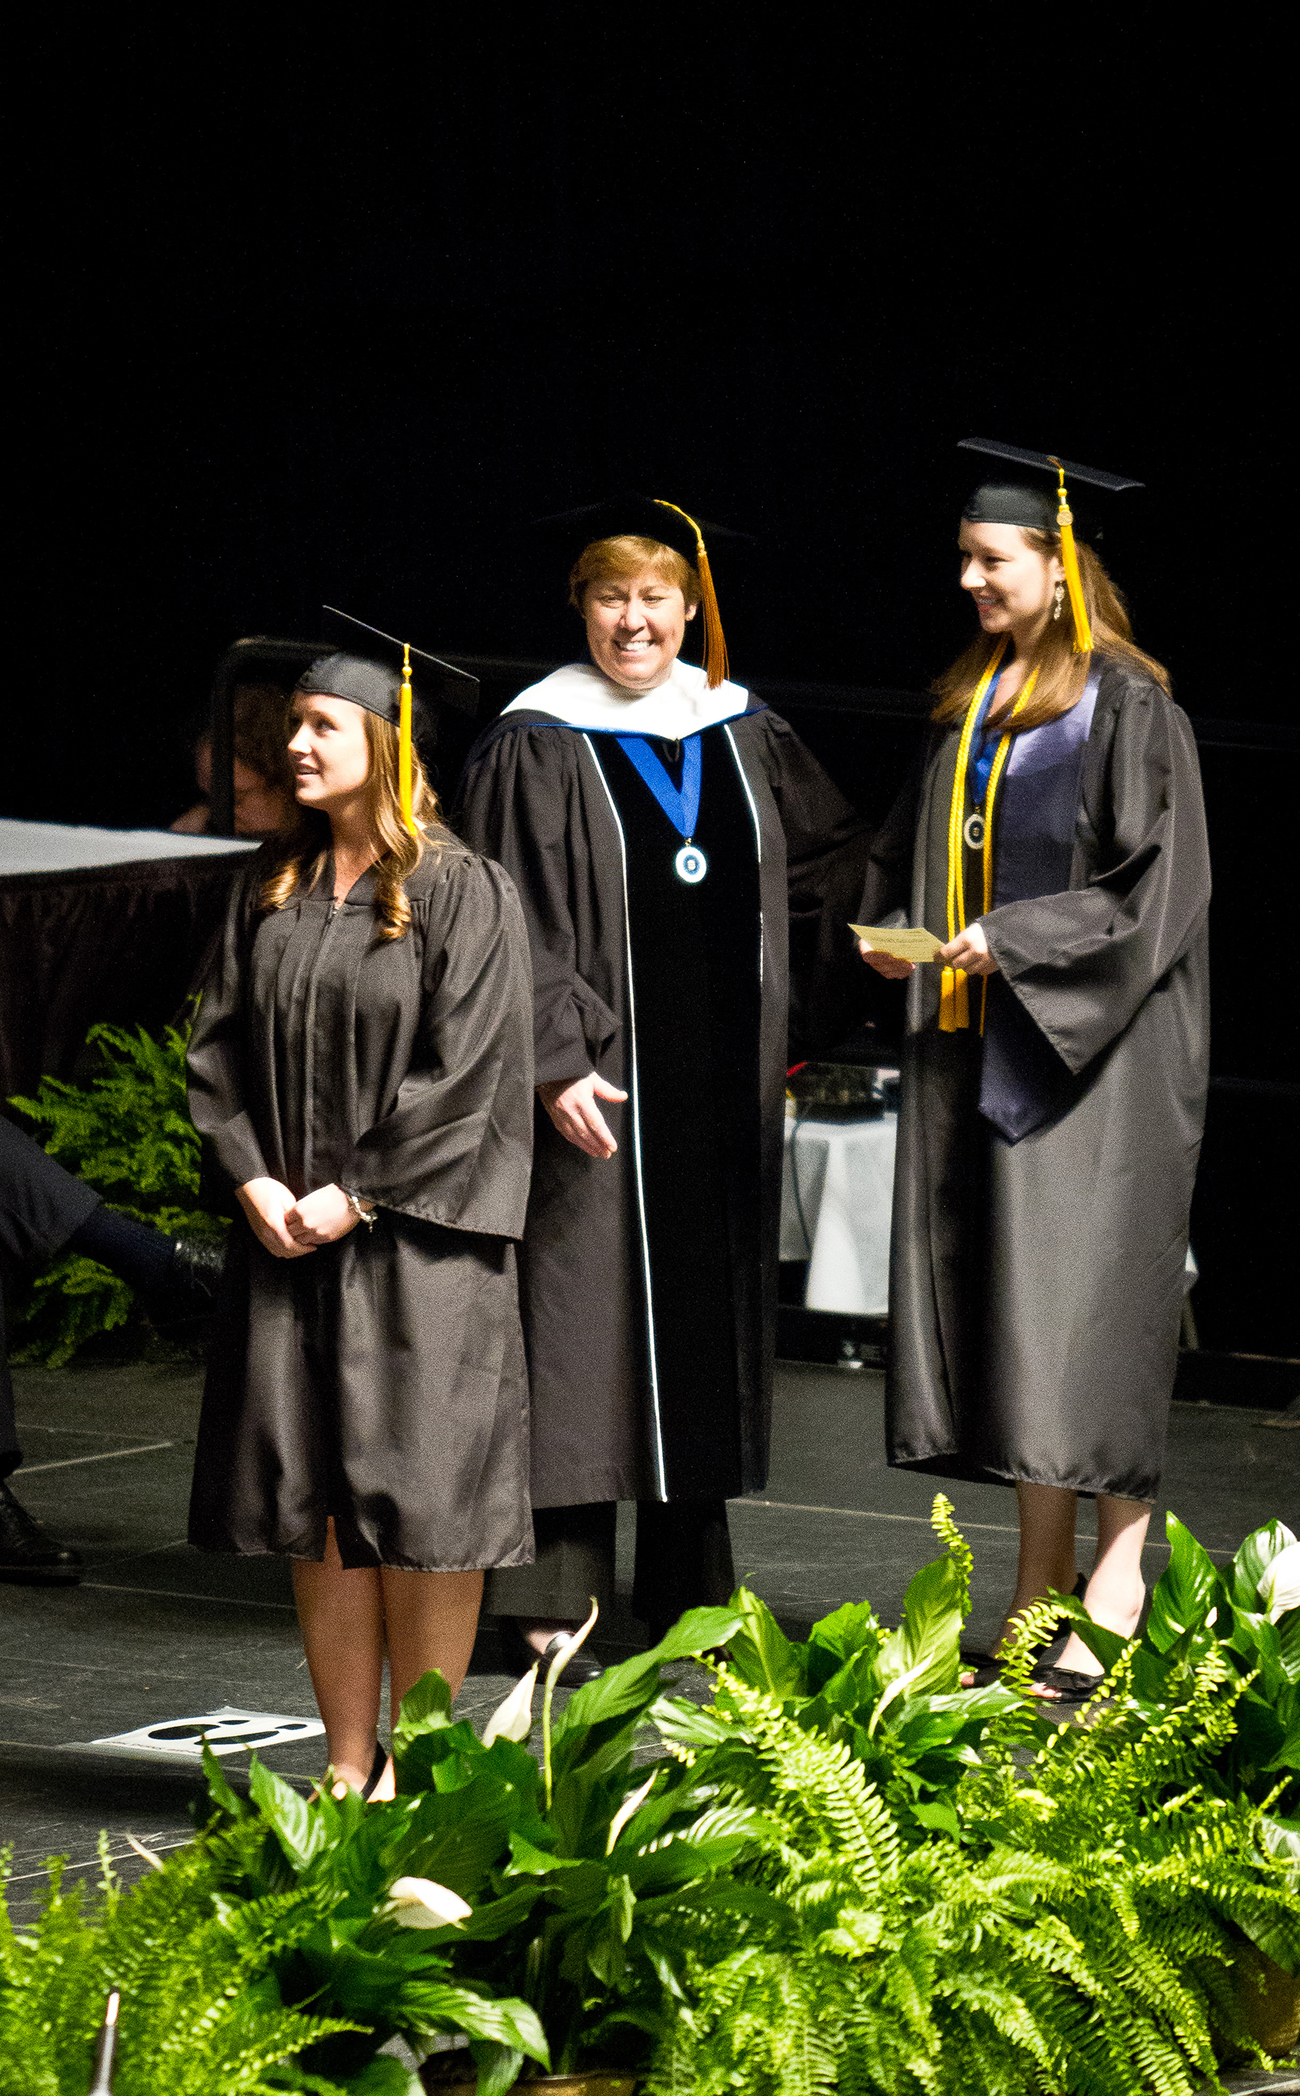 Les diplômés, coiffés d'une casquette et d'une toge, franchissent une scène pour obtenir leur diplôme.